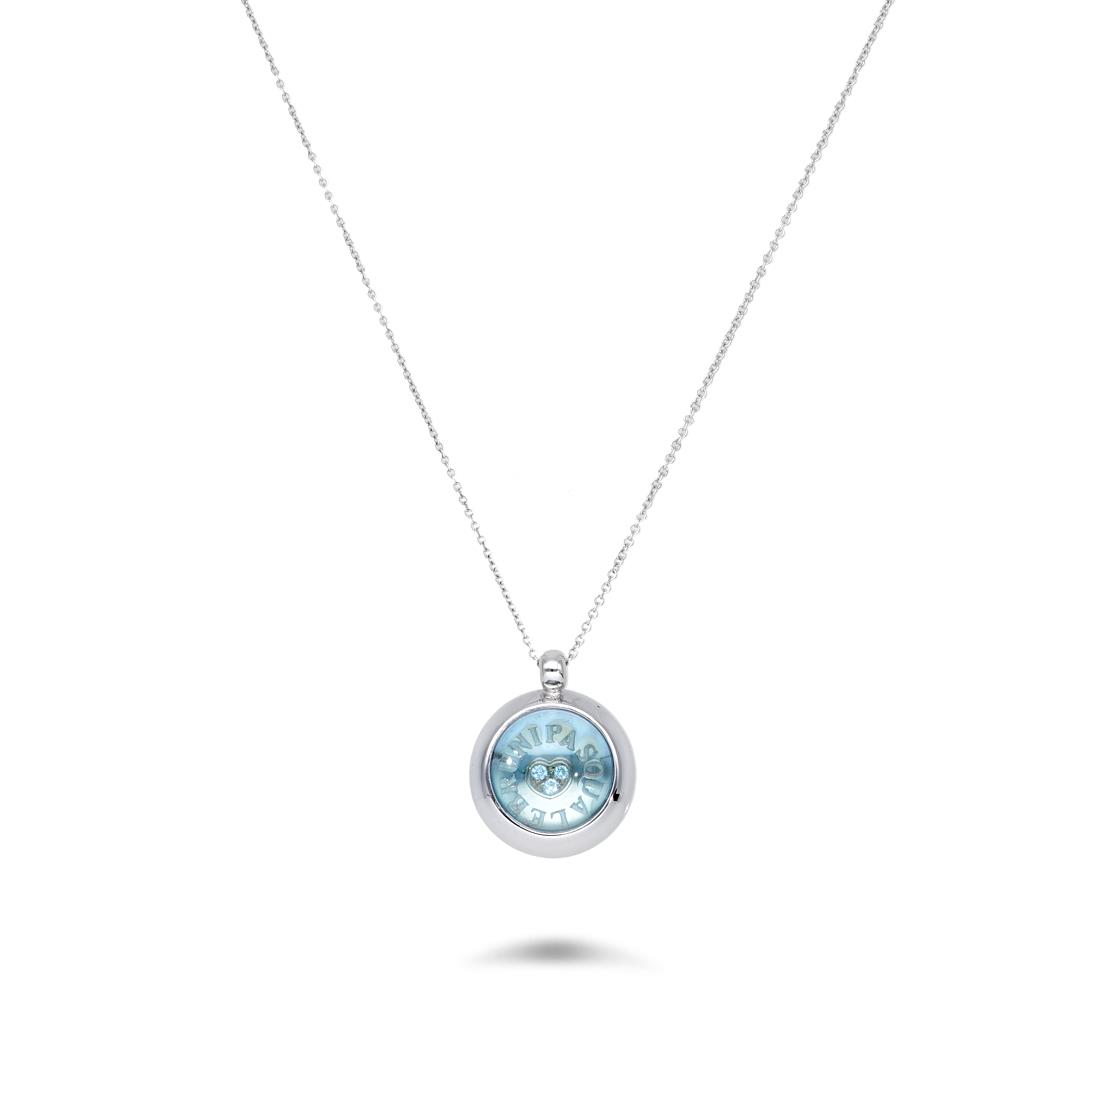 Necklace with aquamarine pendant - PASQUALE BRUNI